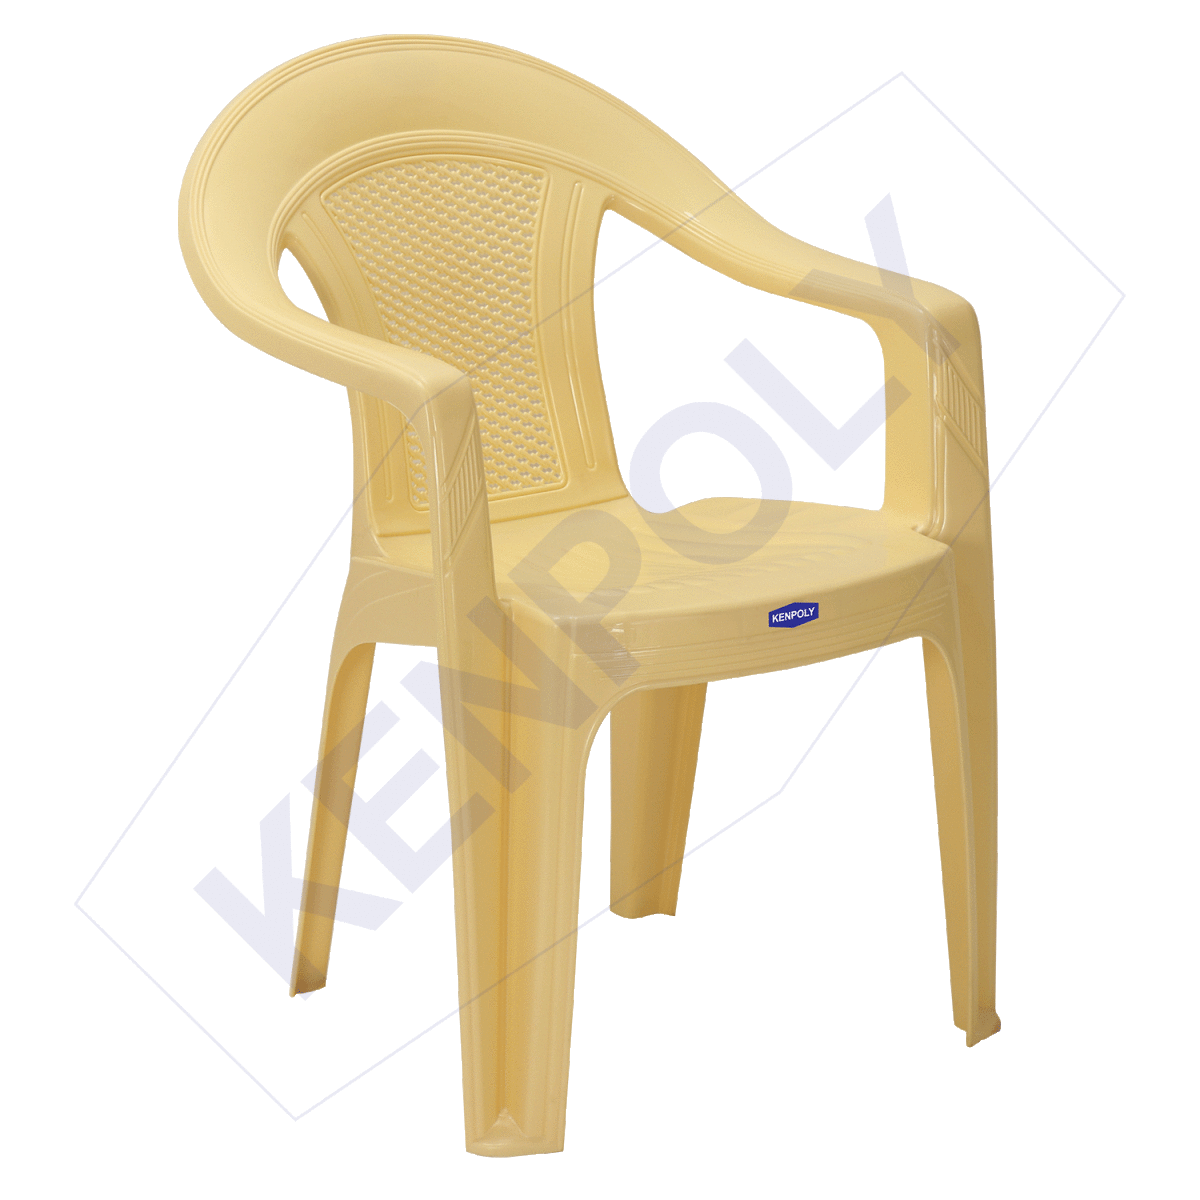 Chair 2021